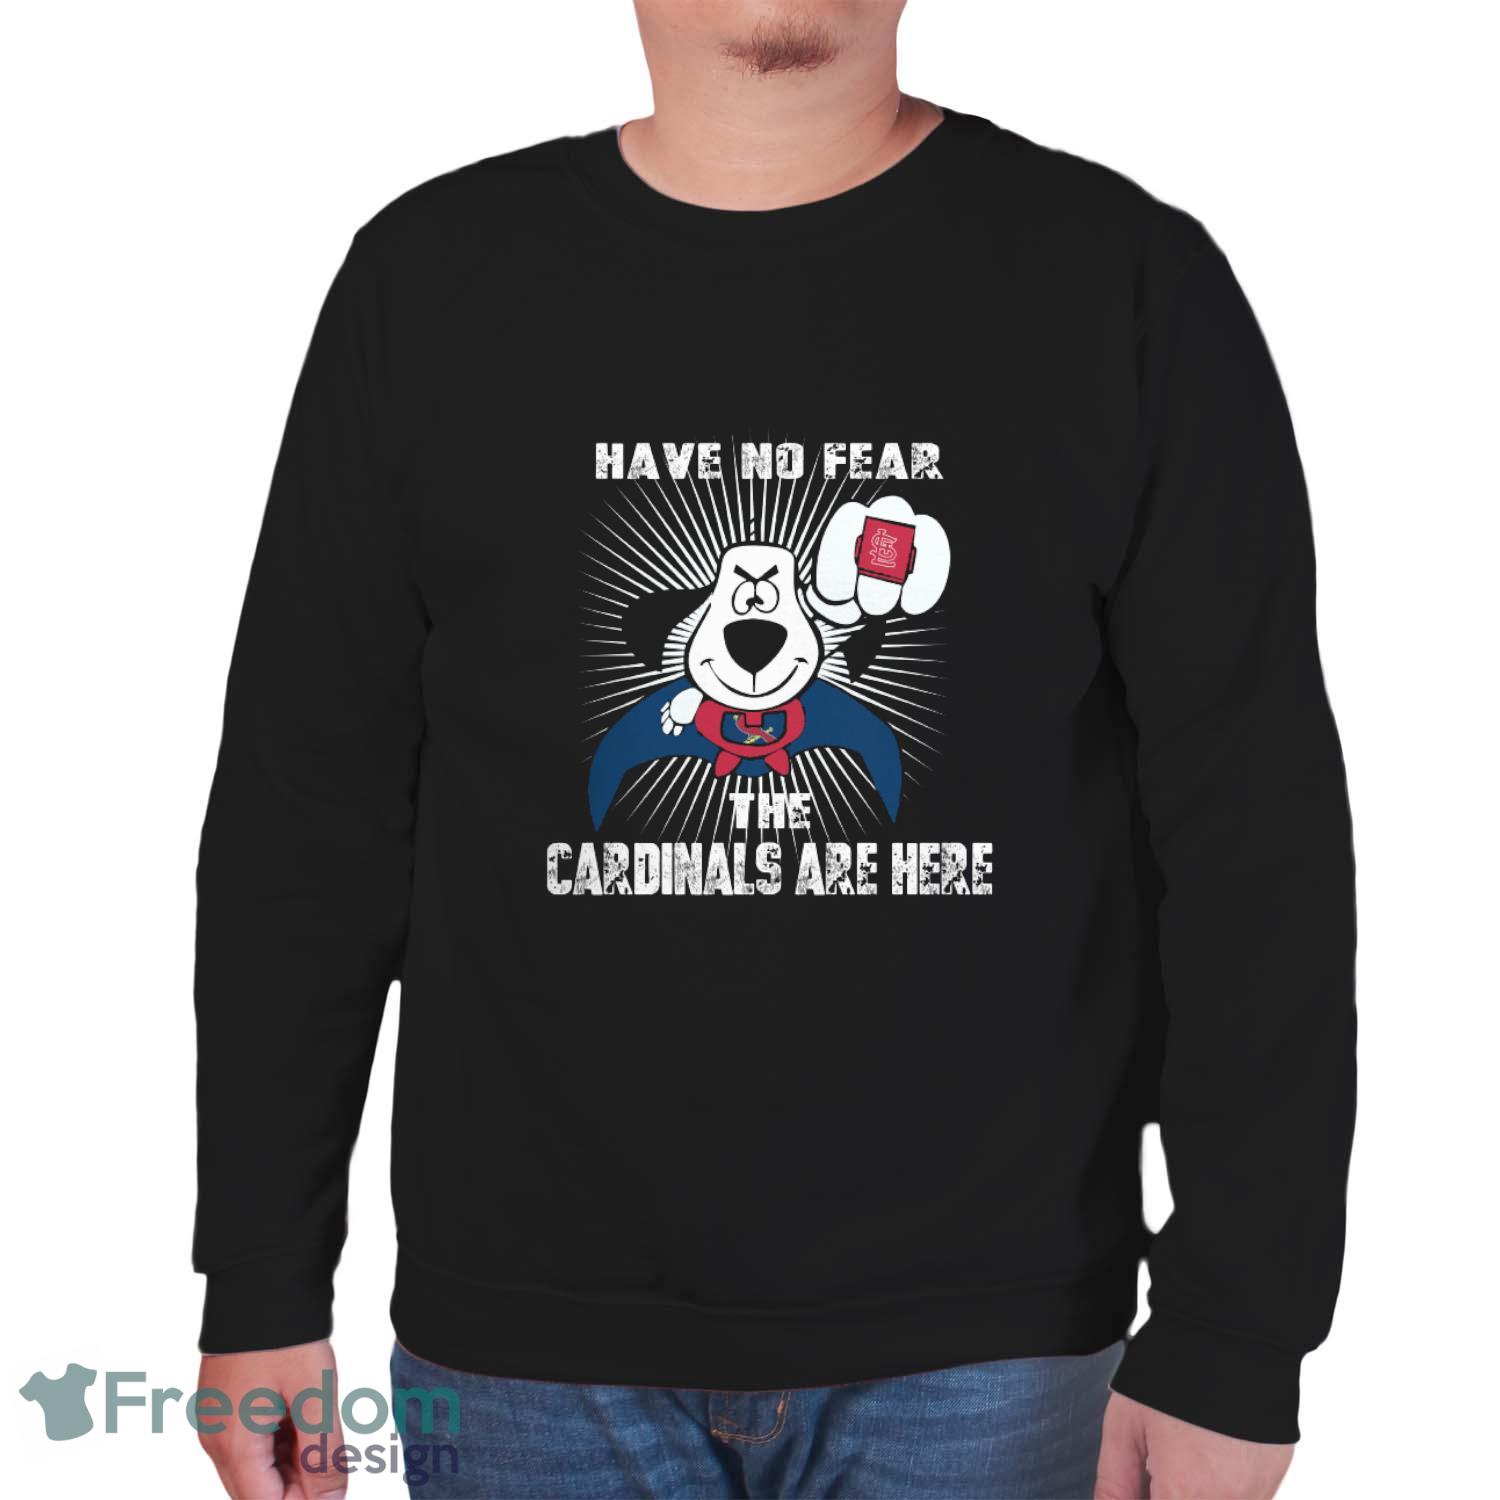 My Cardinal Romance Shirt St. Louis Cardinals Shirt, hoodie, longsleeve,  sweatshirt, v-neck tee